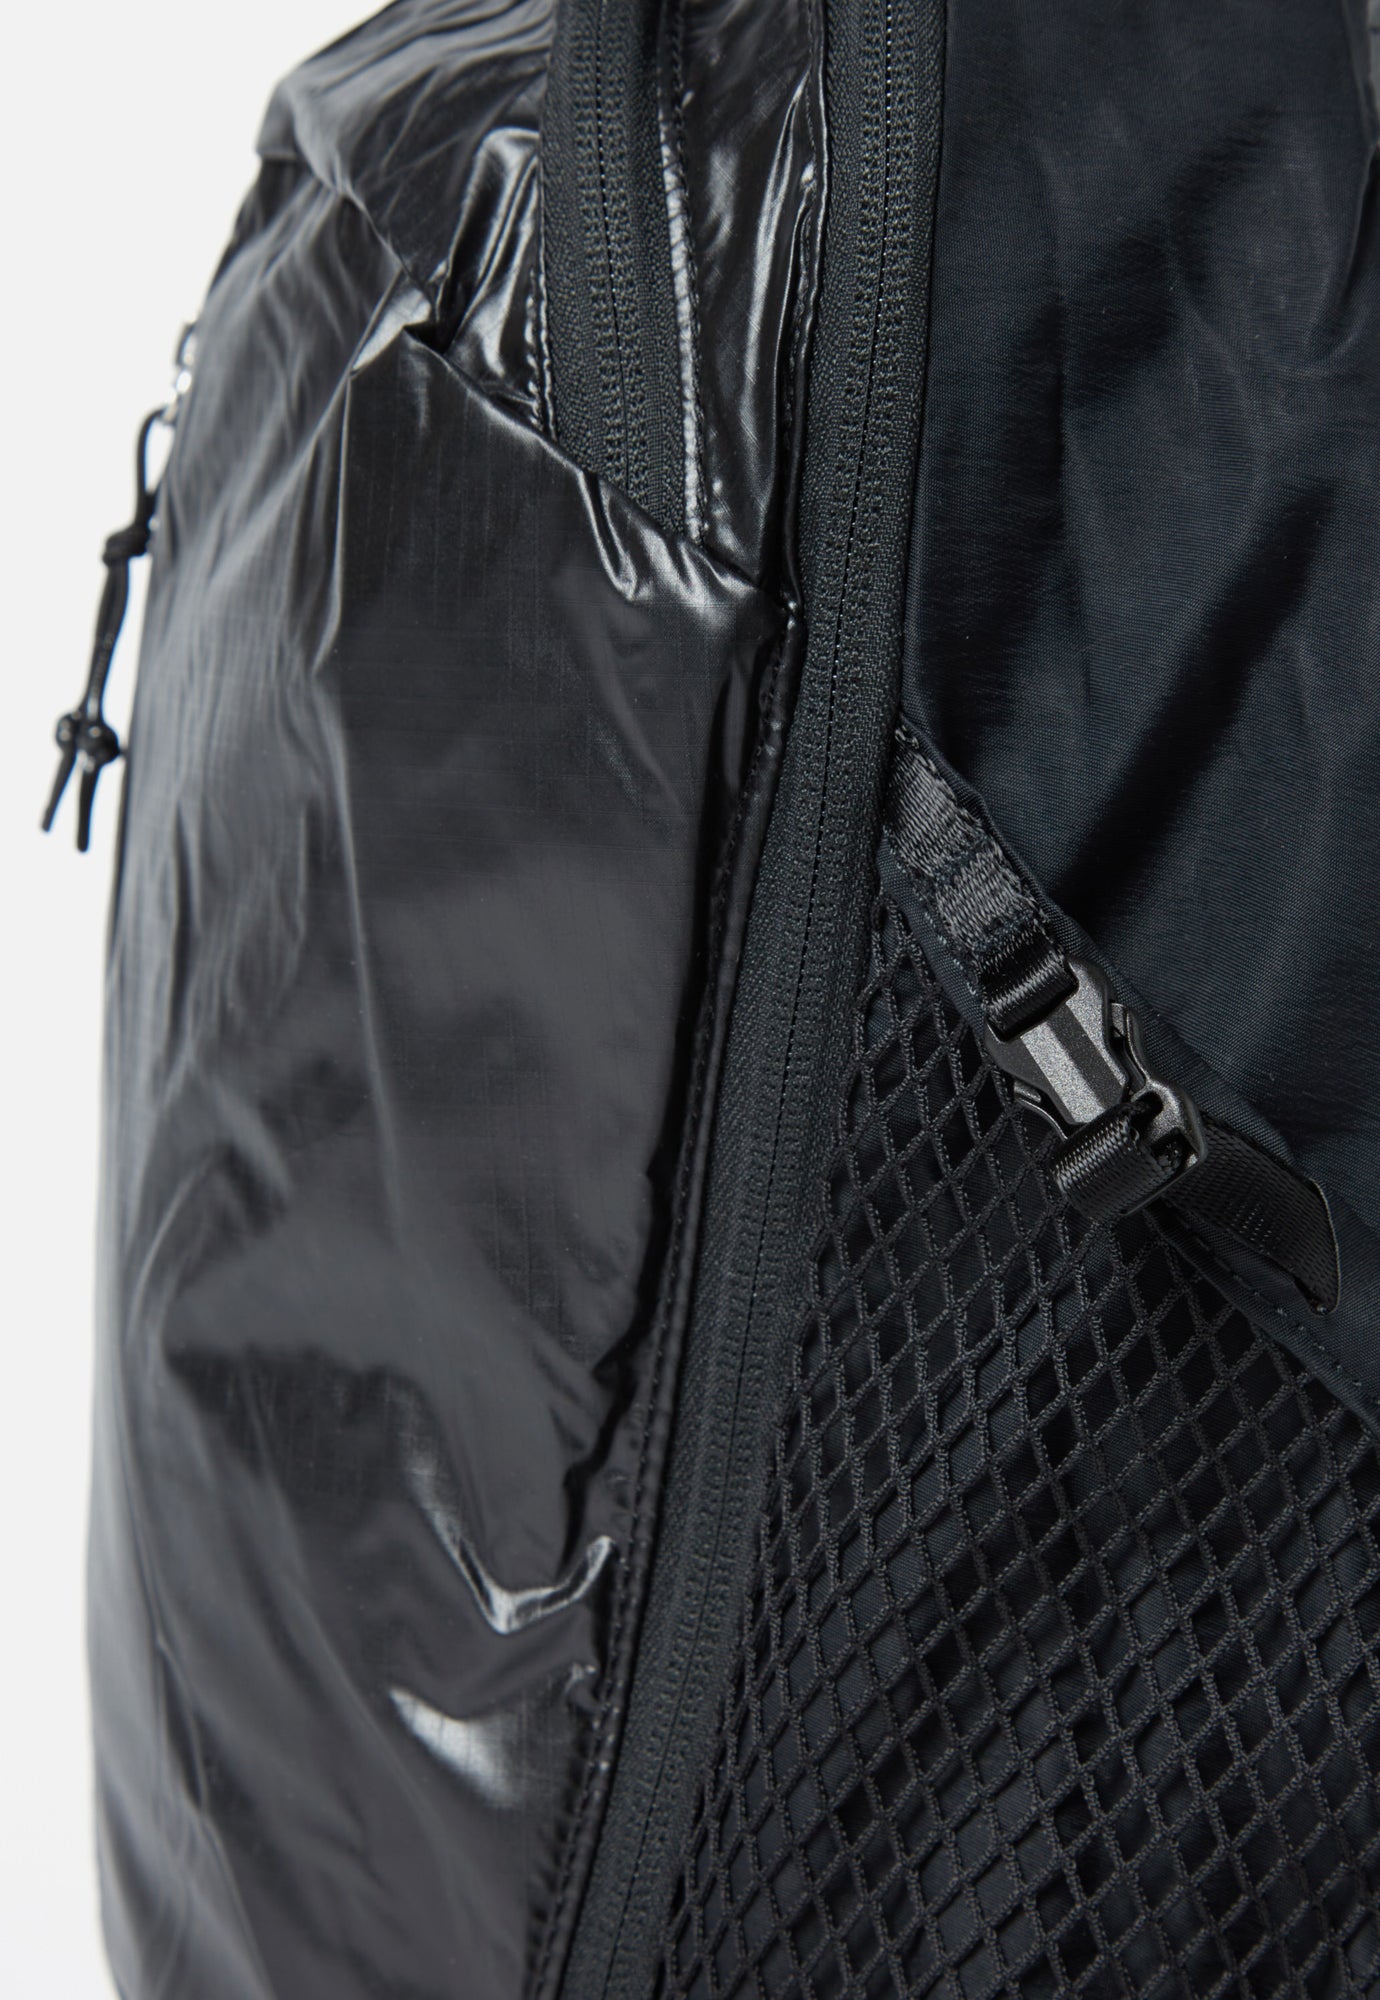 Sandqvist 'Bo' Backpack in Black Recycled Ripstop Nylon